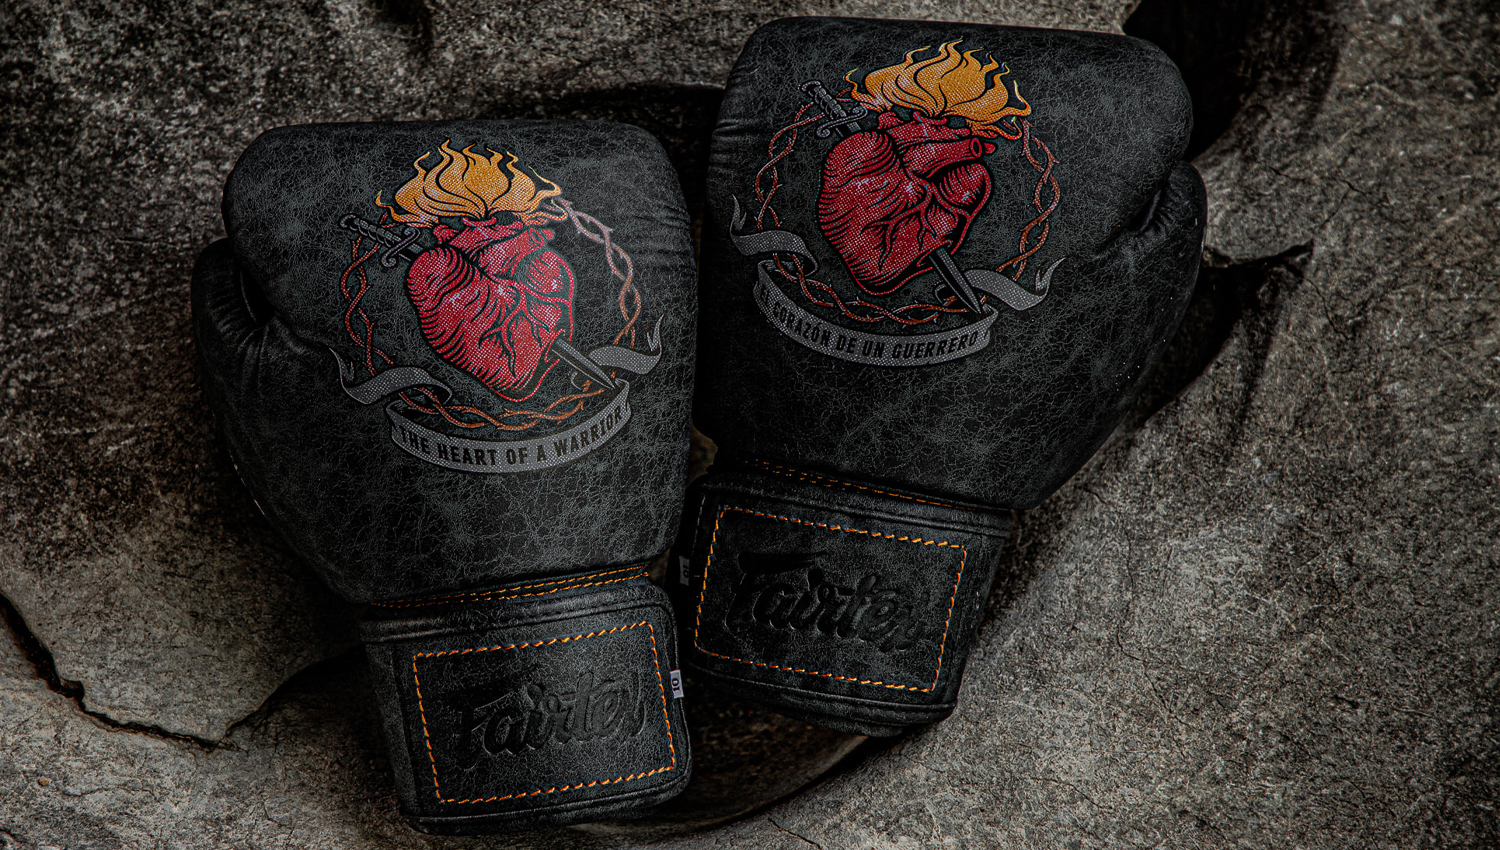 35100円 幸せなふたりに贈る結婚祝い New Genuine FAIRTEX Limited Boxing Gloves The Beauty of Survival 16oz 並行輸入品